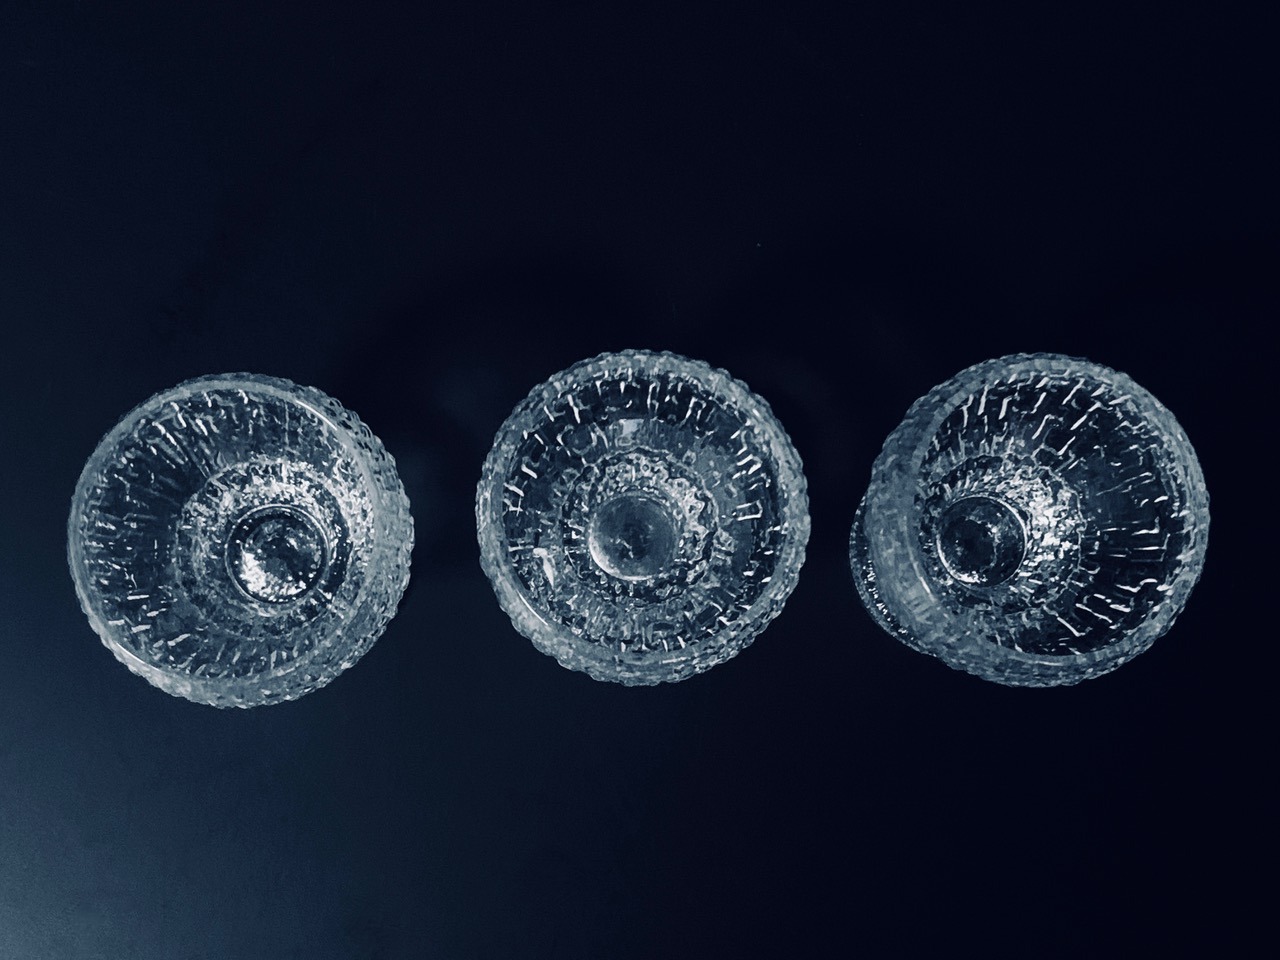 Immagine del set di tre bicchierini Kekkerit di Iittala Timo Sarpaneva offerto in questa pubblicità.